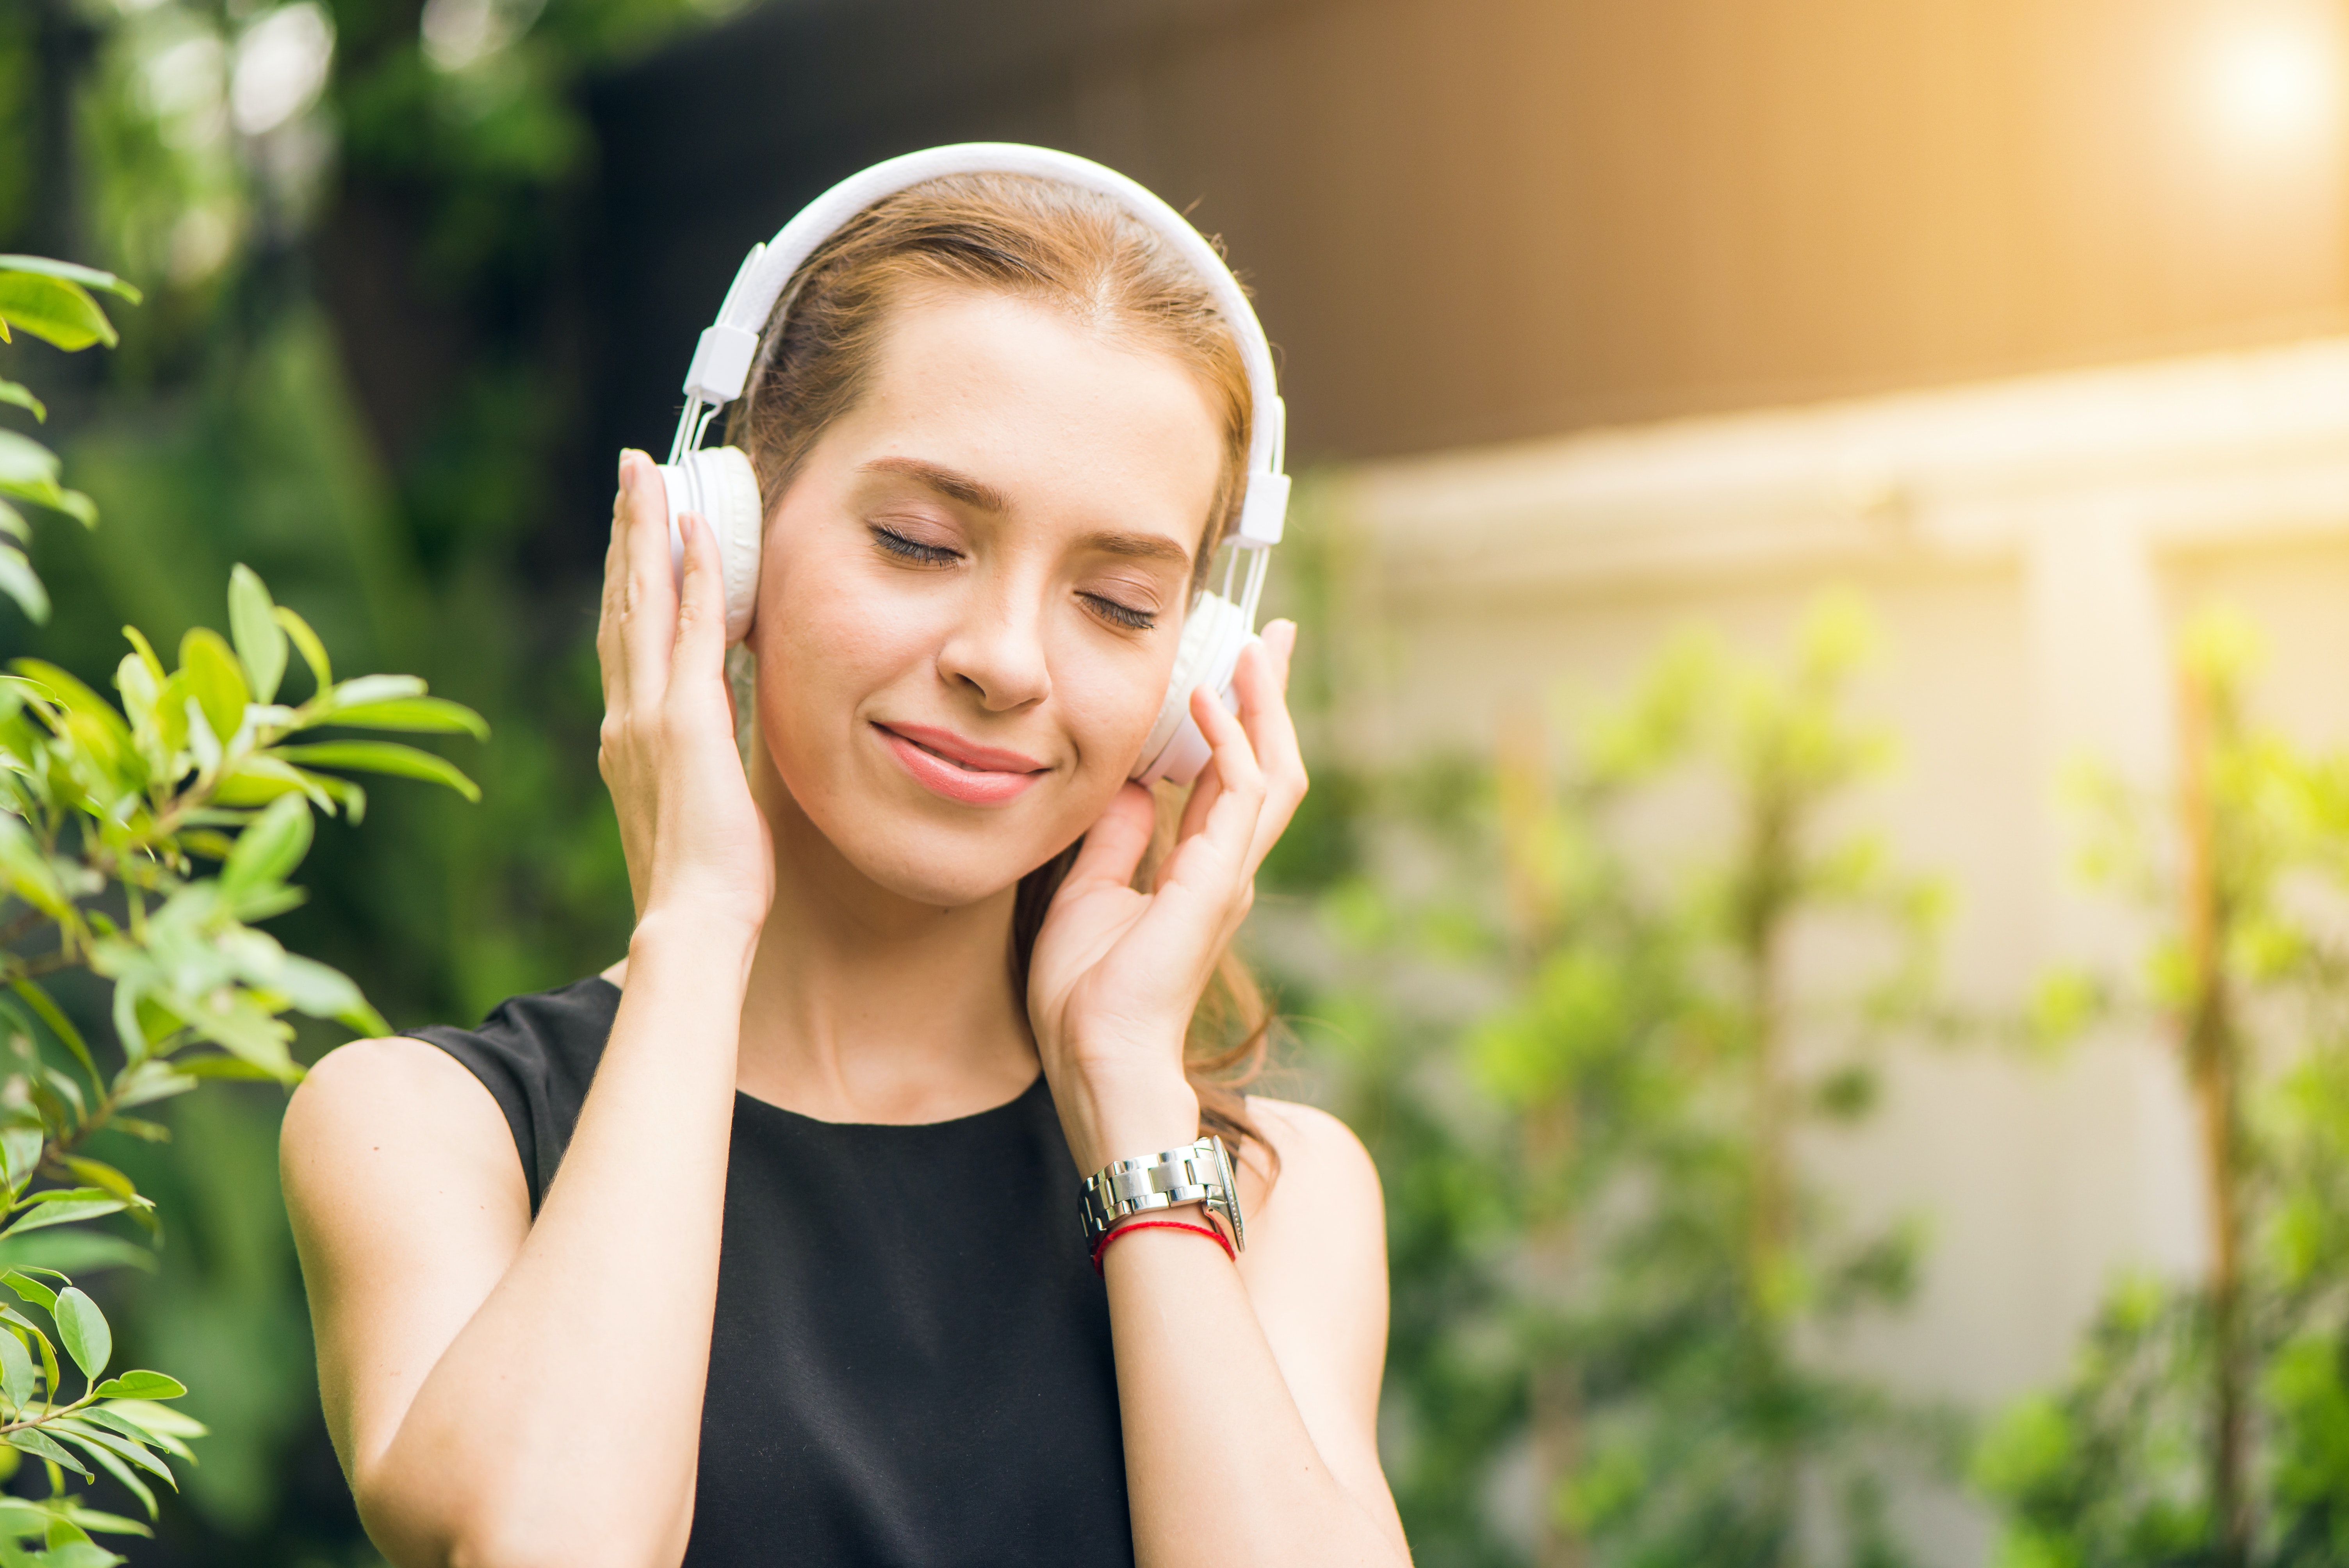 الغناء أو العزف على آلة موسيقية أو حتى الاستماع إلى الموسيقى يمكن أن يحسن الصحة العقلية (بيكسيلز)